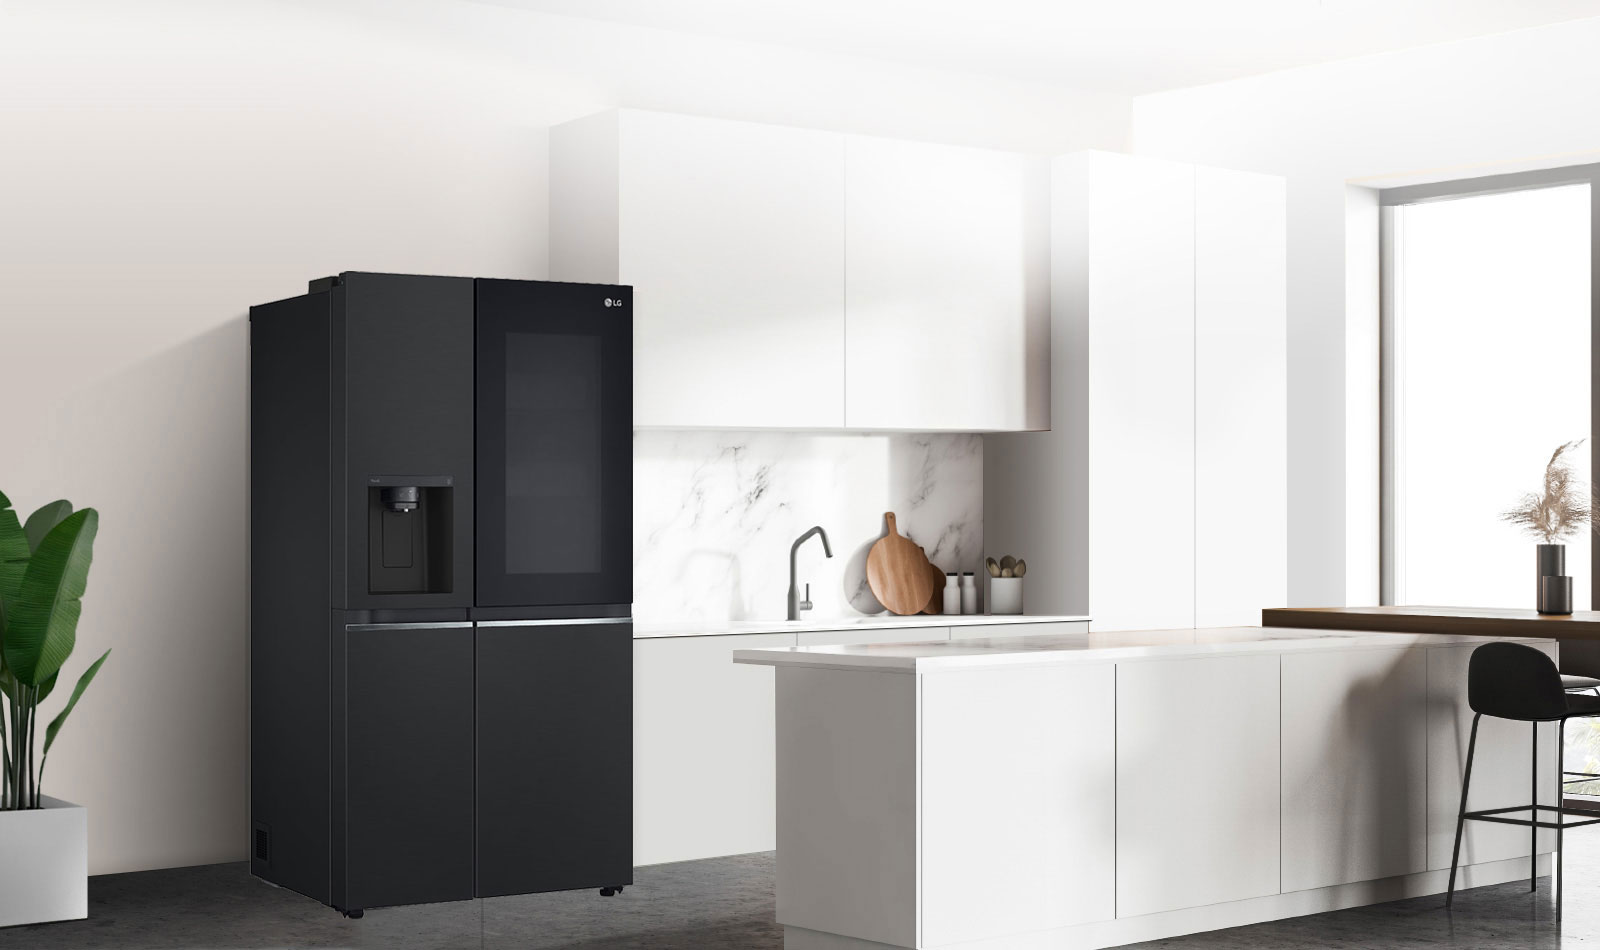 Egy fekete InstaView hűtővel felszerelt konyha oldalról nézve.